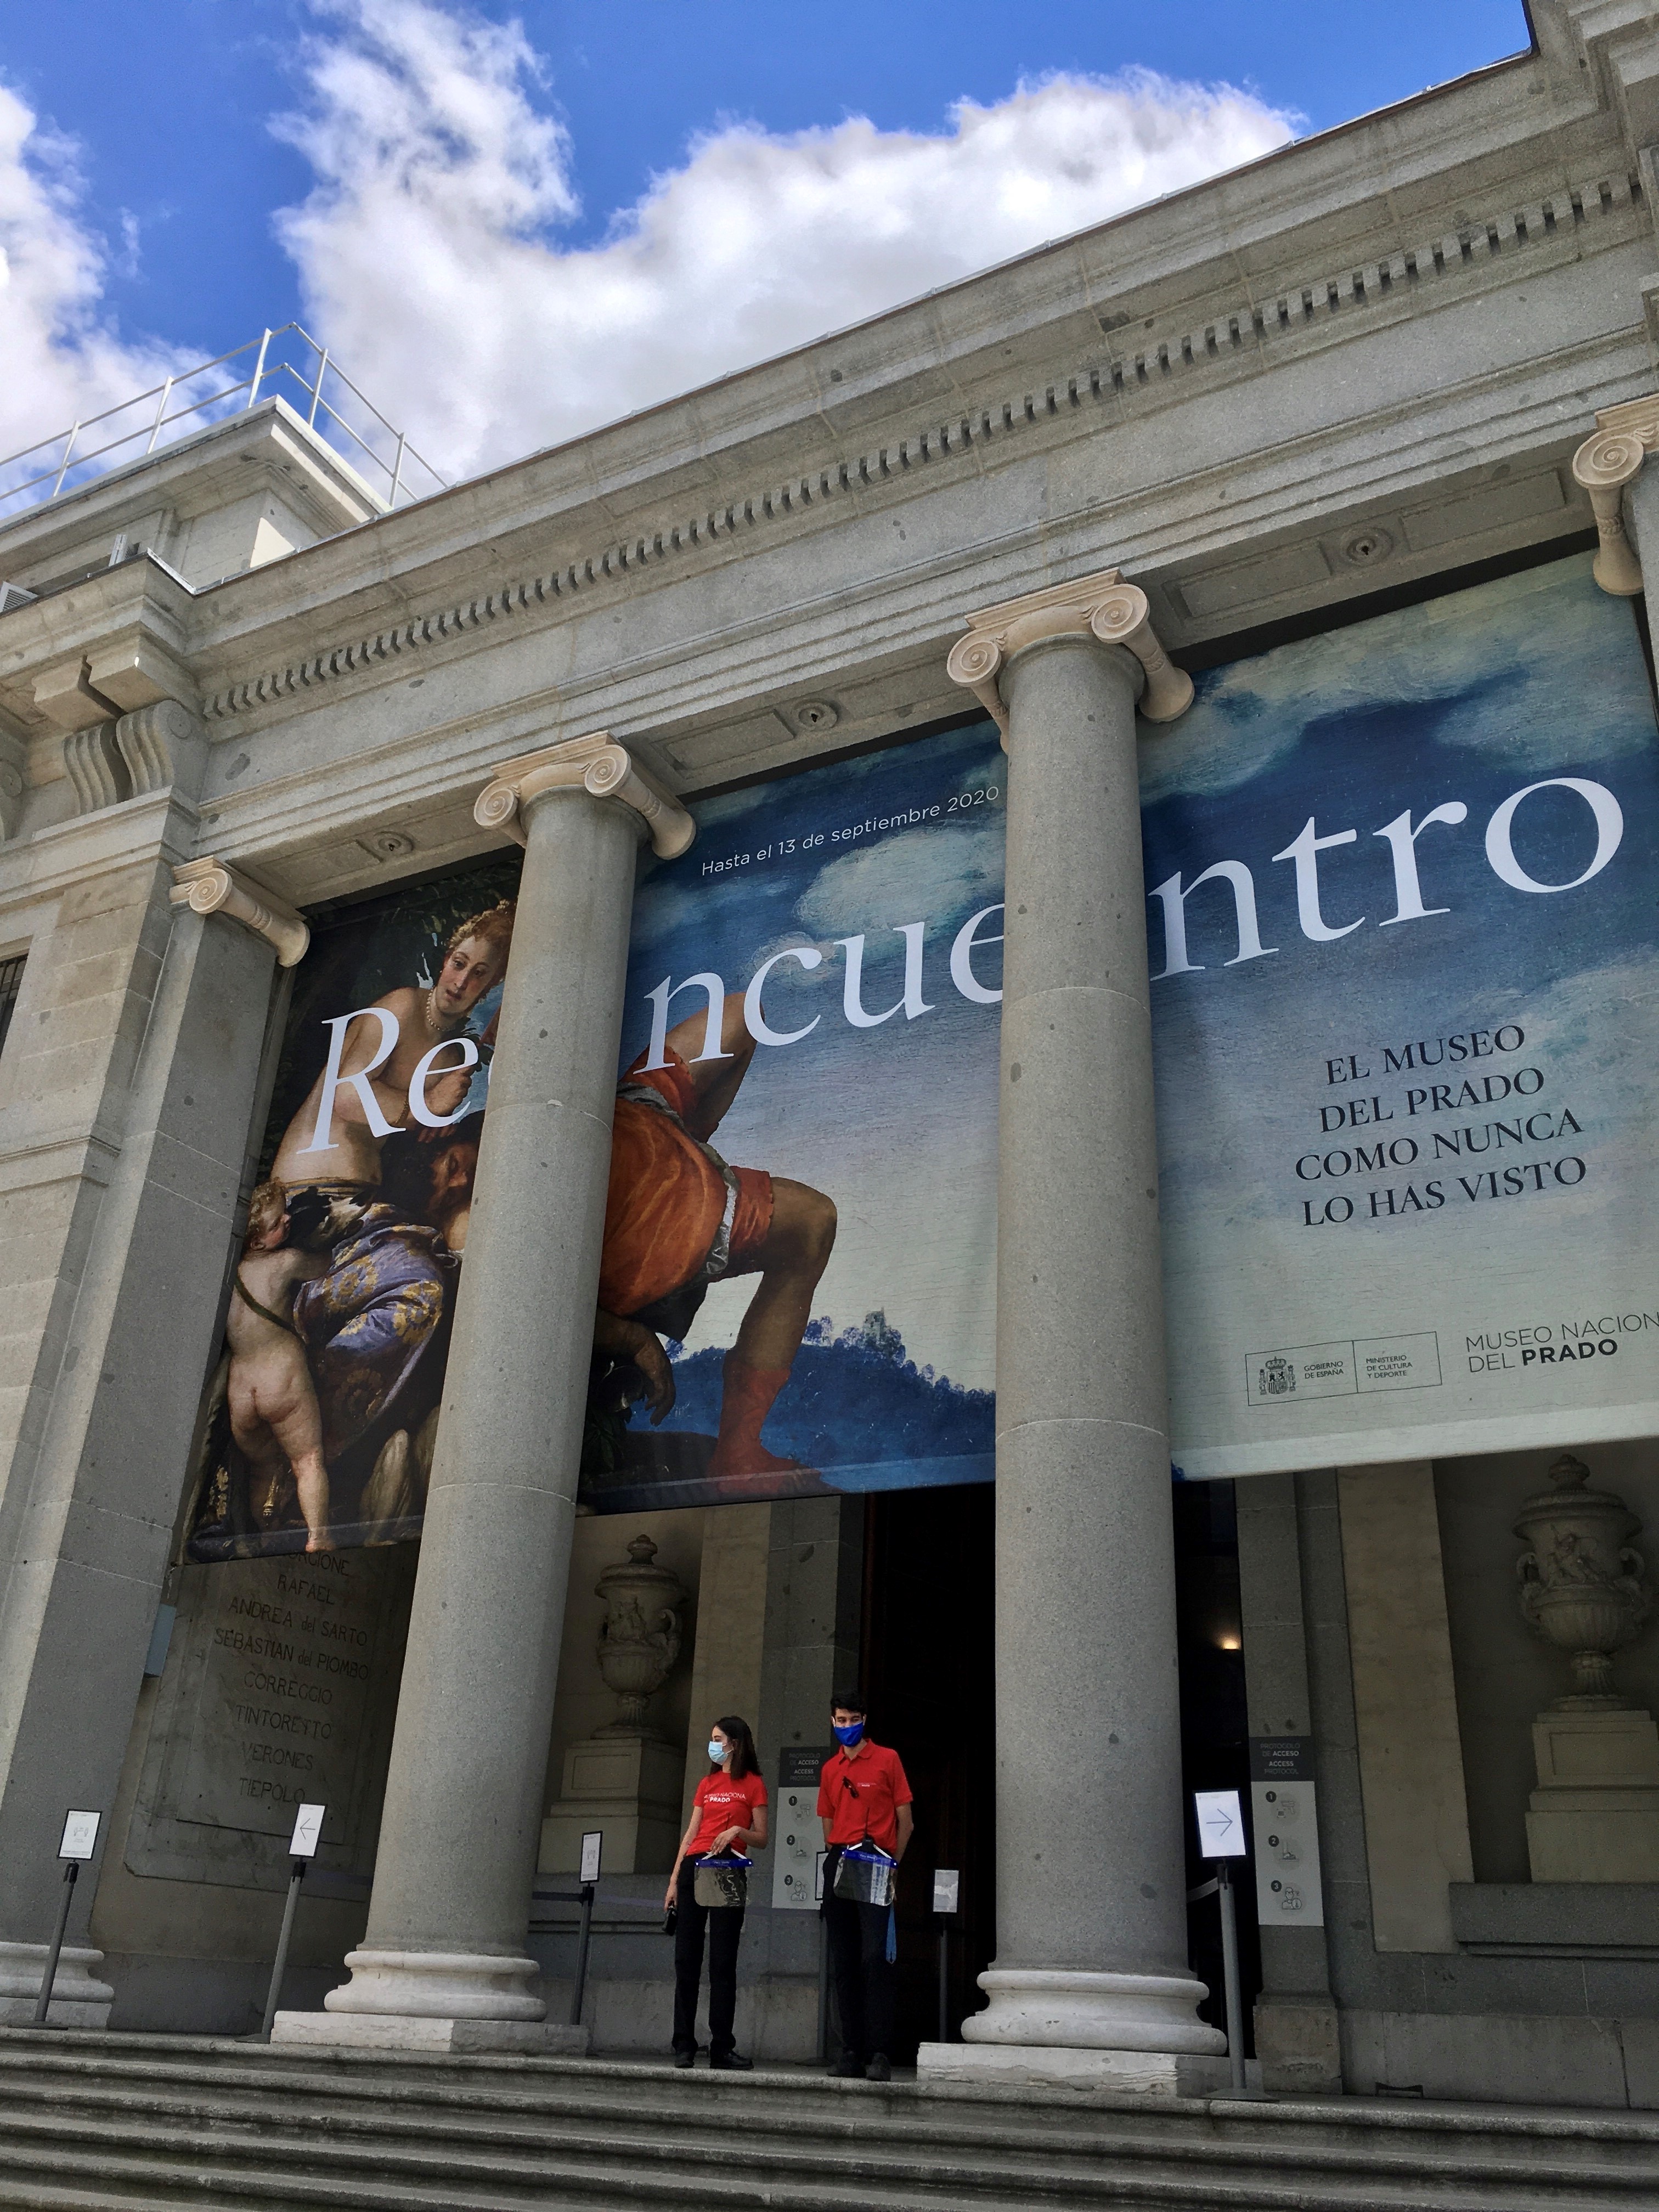 Entrance to the Prado Museum